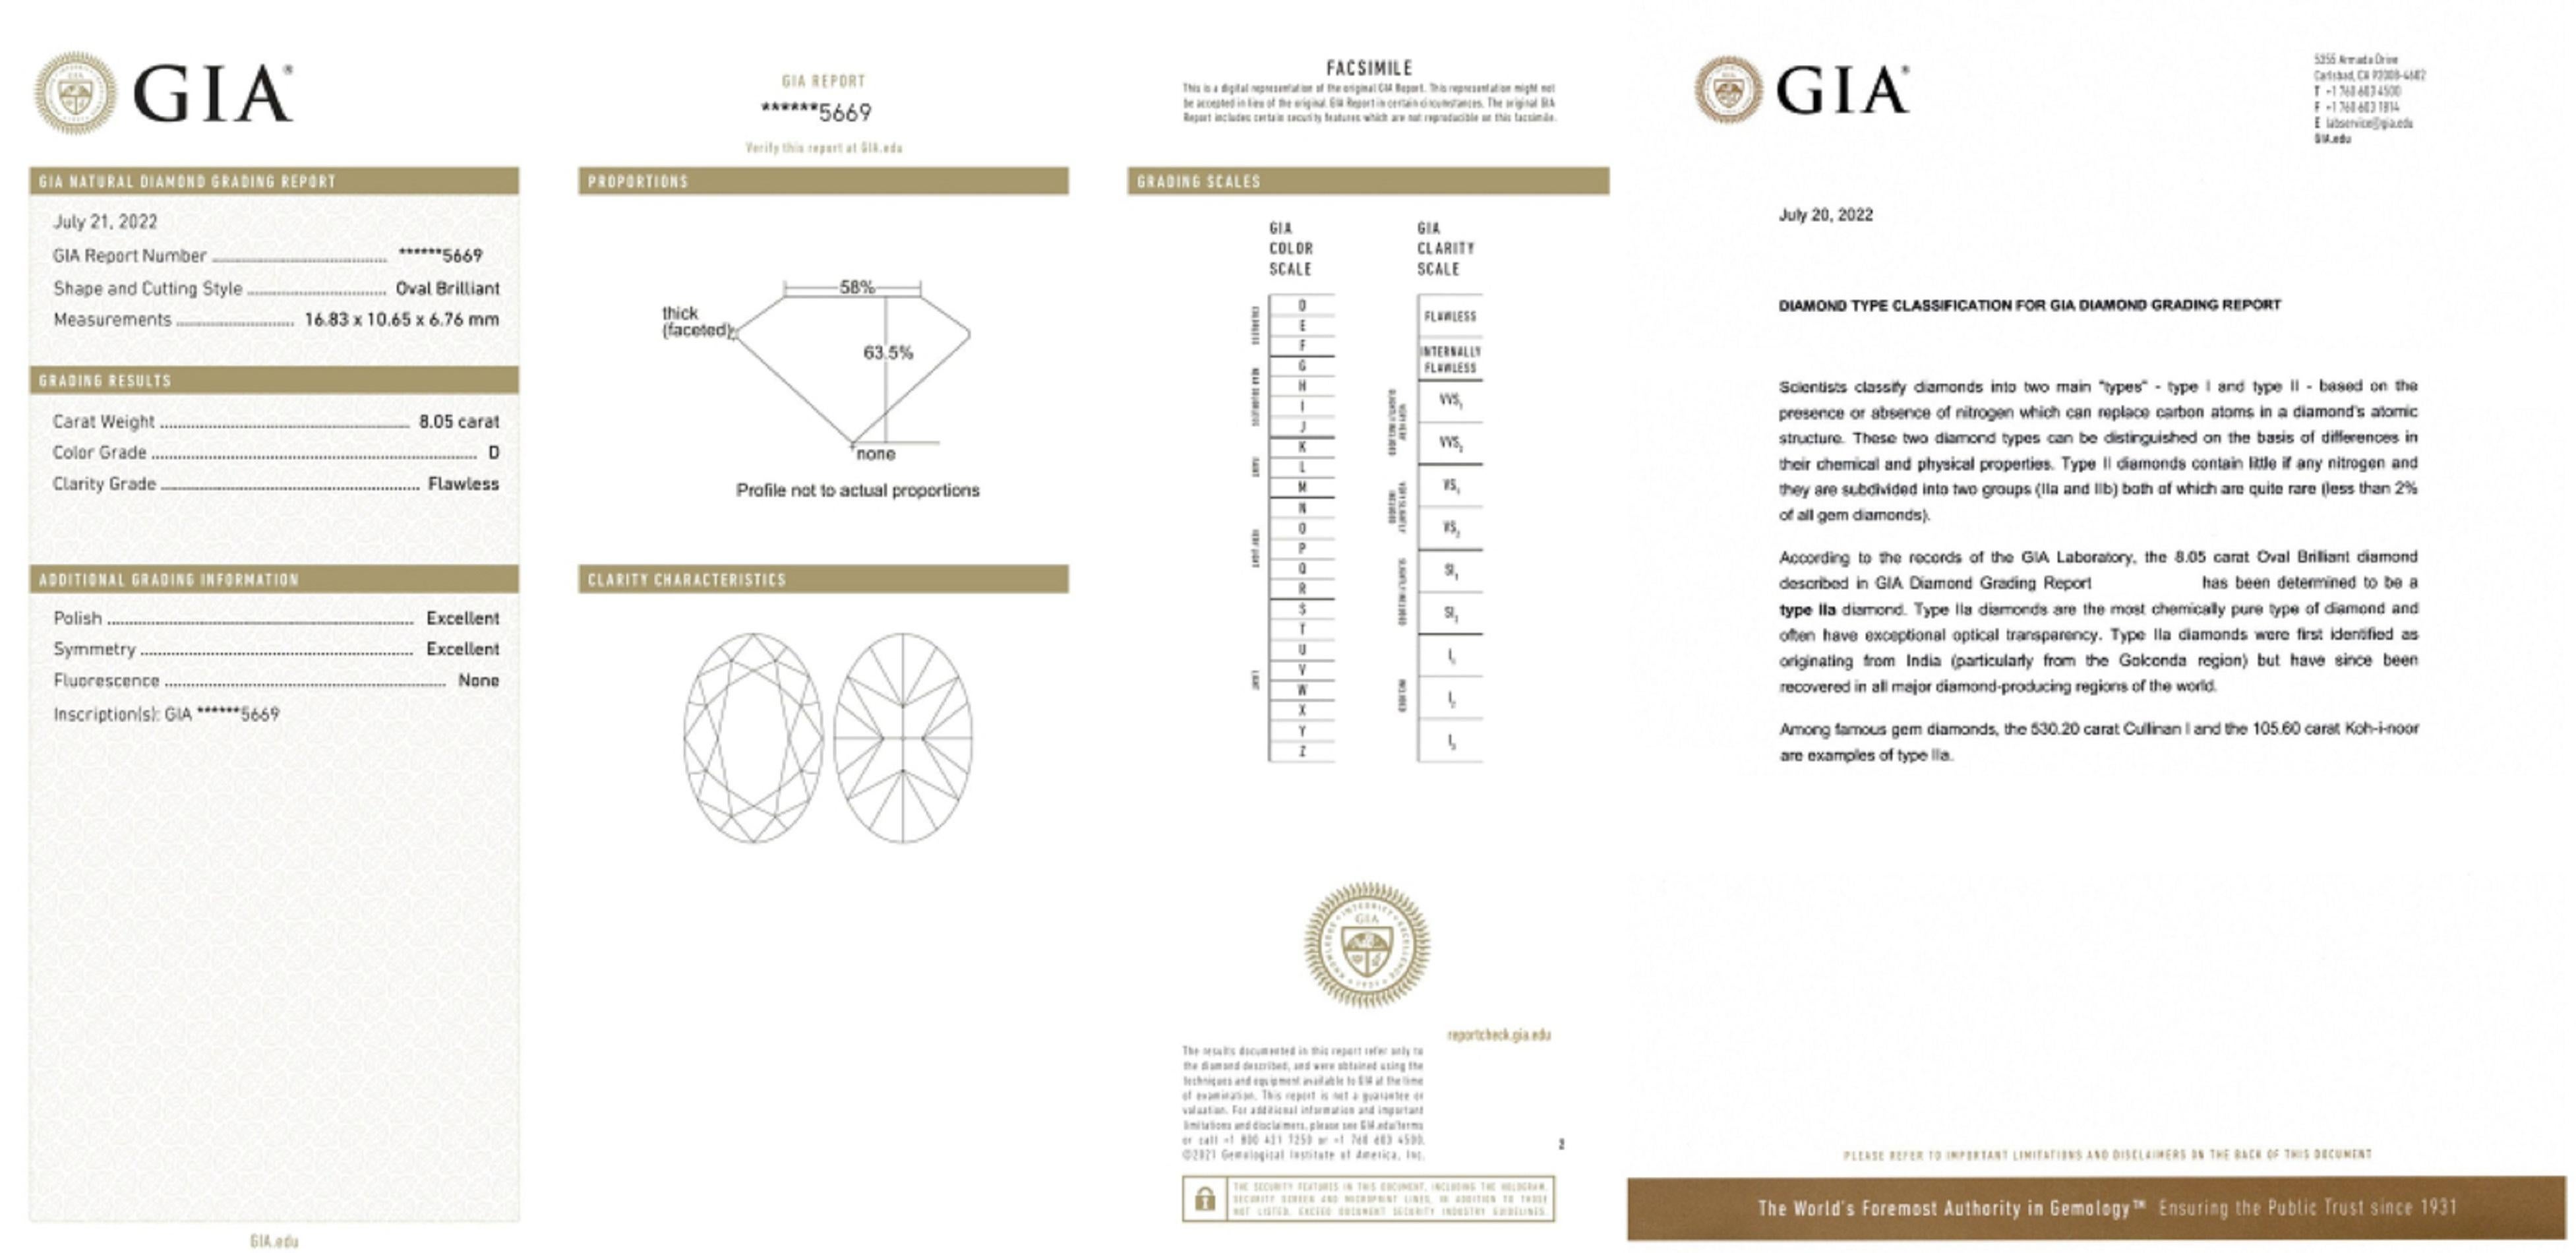 Modern GIA Certified 8 Carat Type IIA Golconda type Oval Diamond Ring For Sale